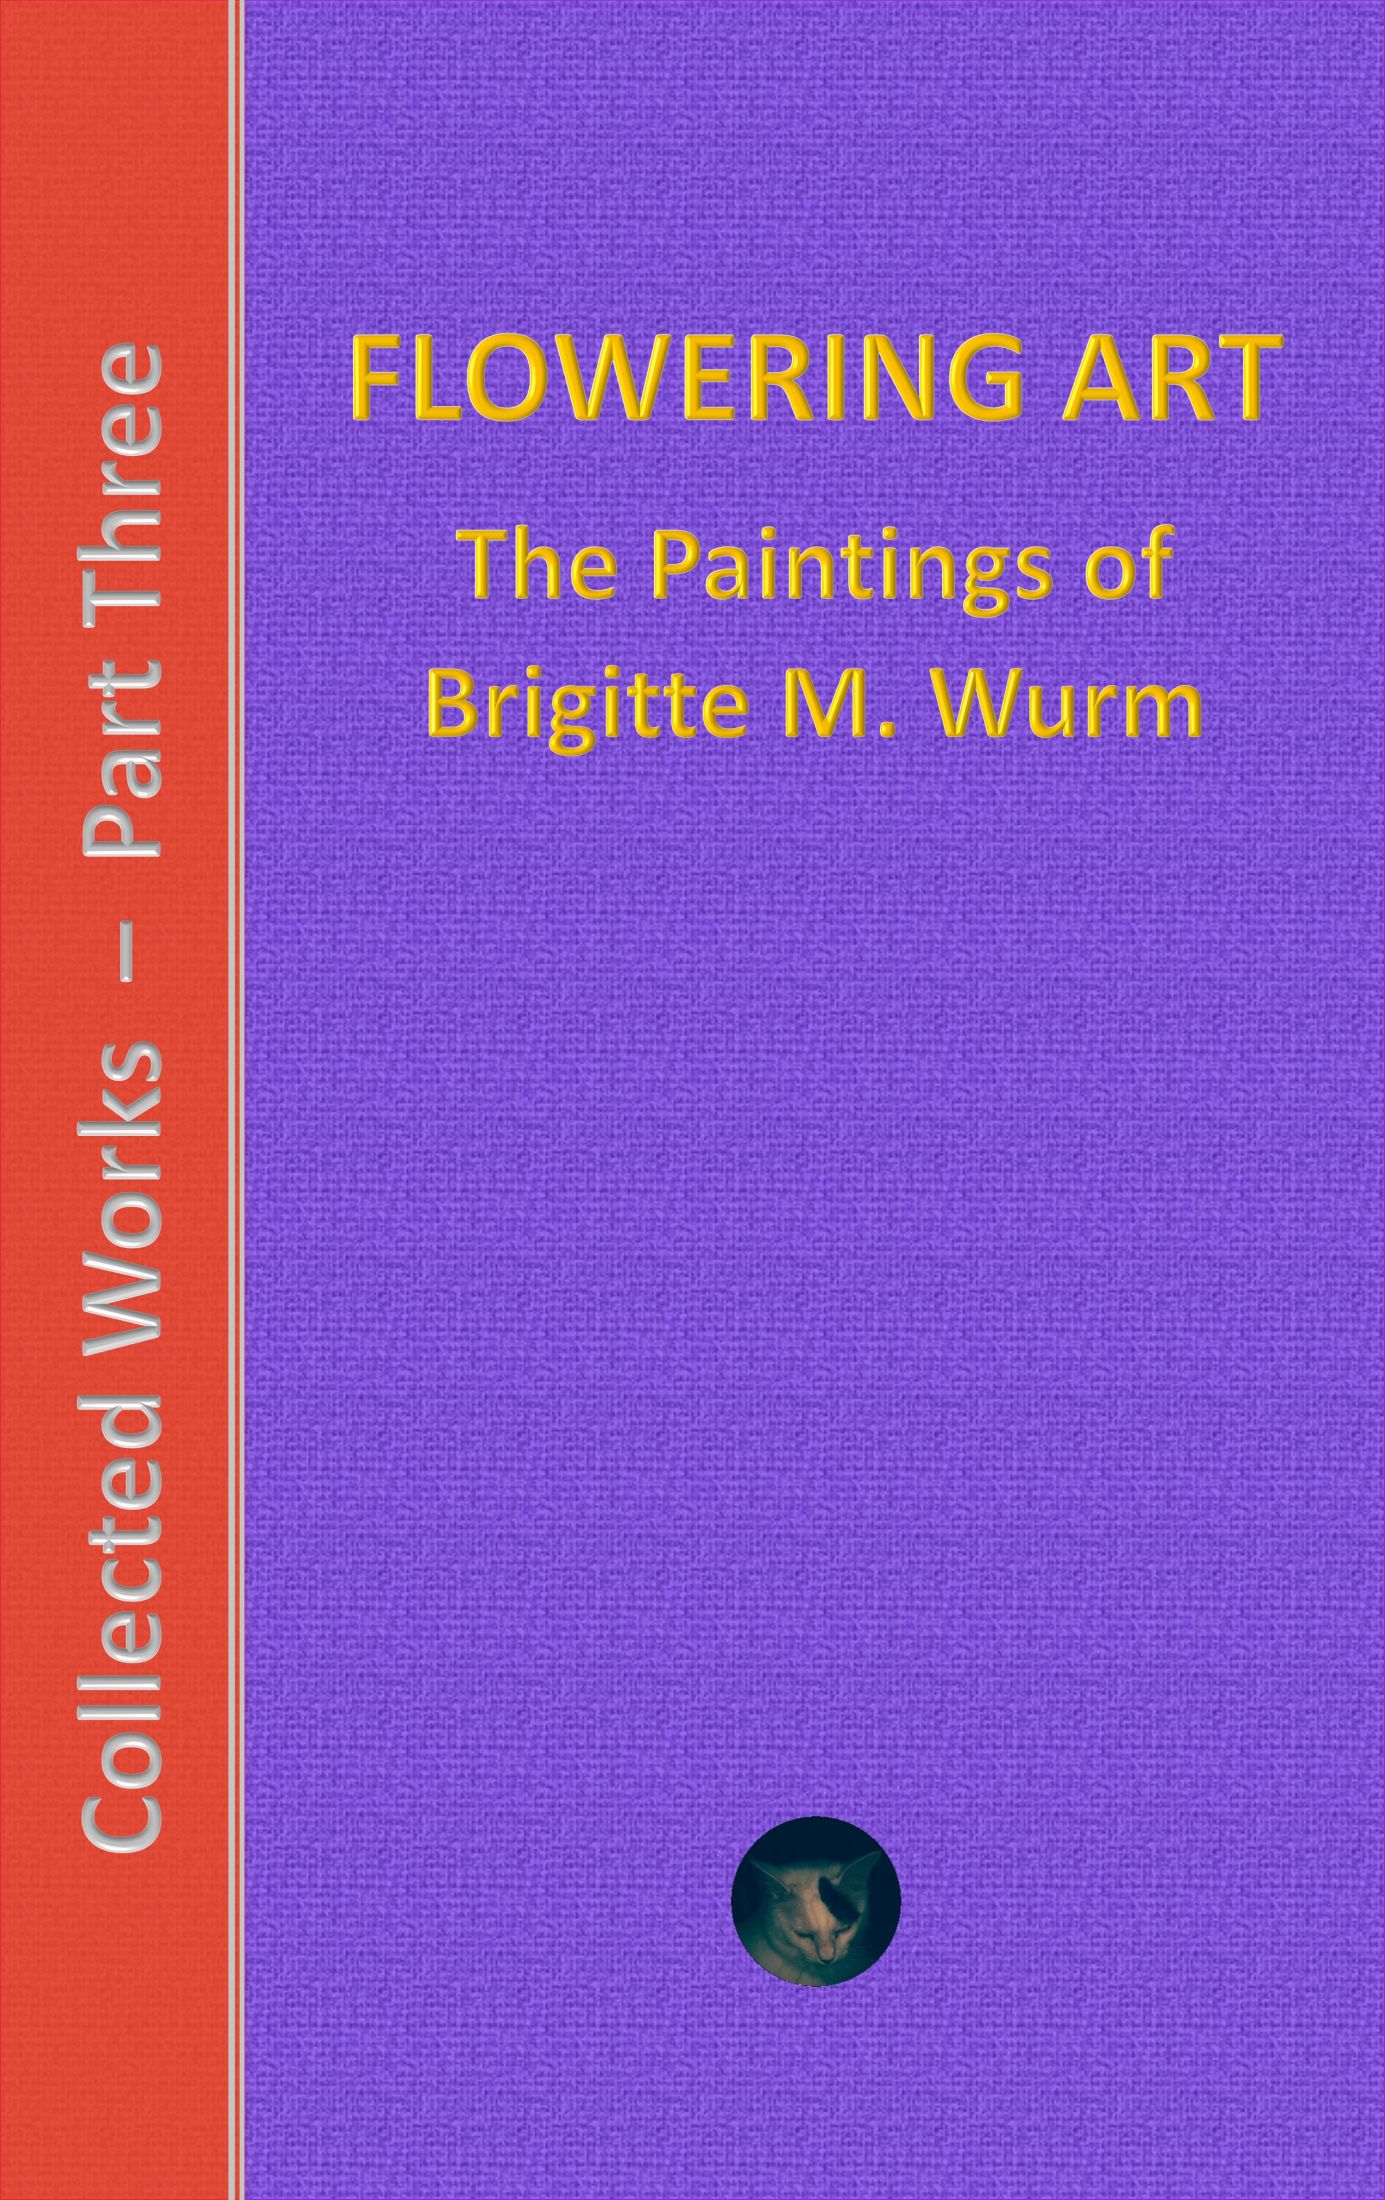 Brigitte M. Wurm:: Collected Works - Part Three